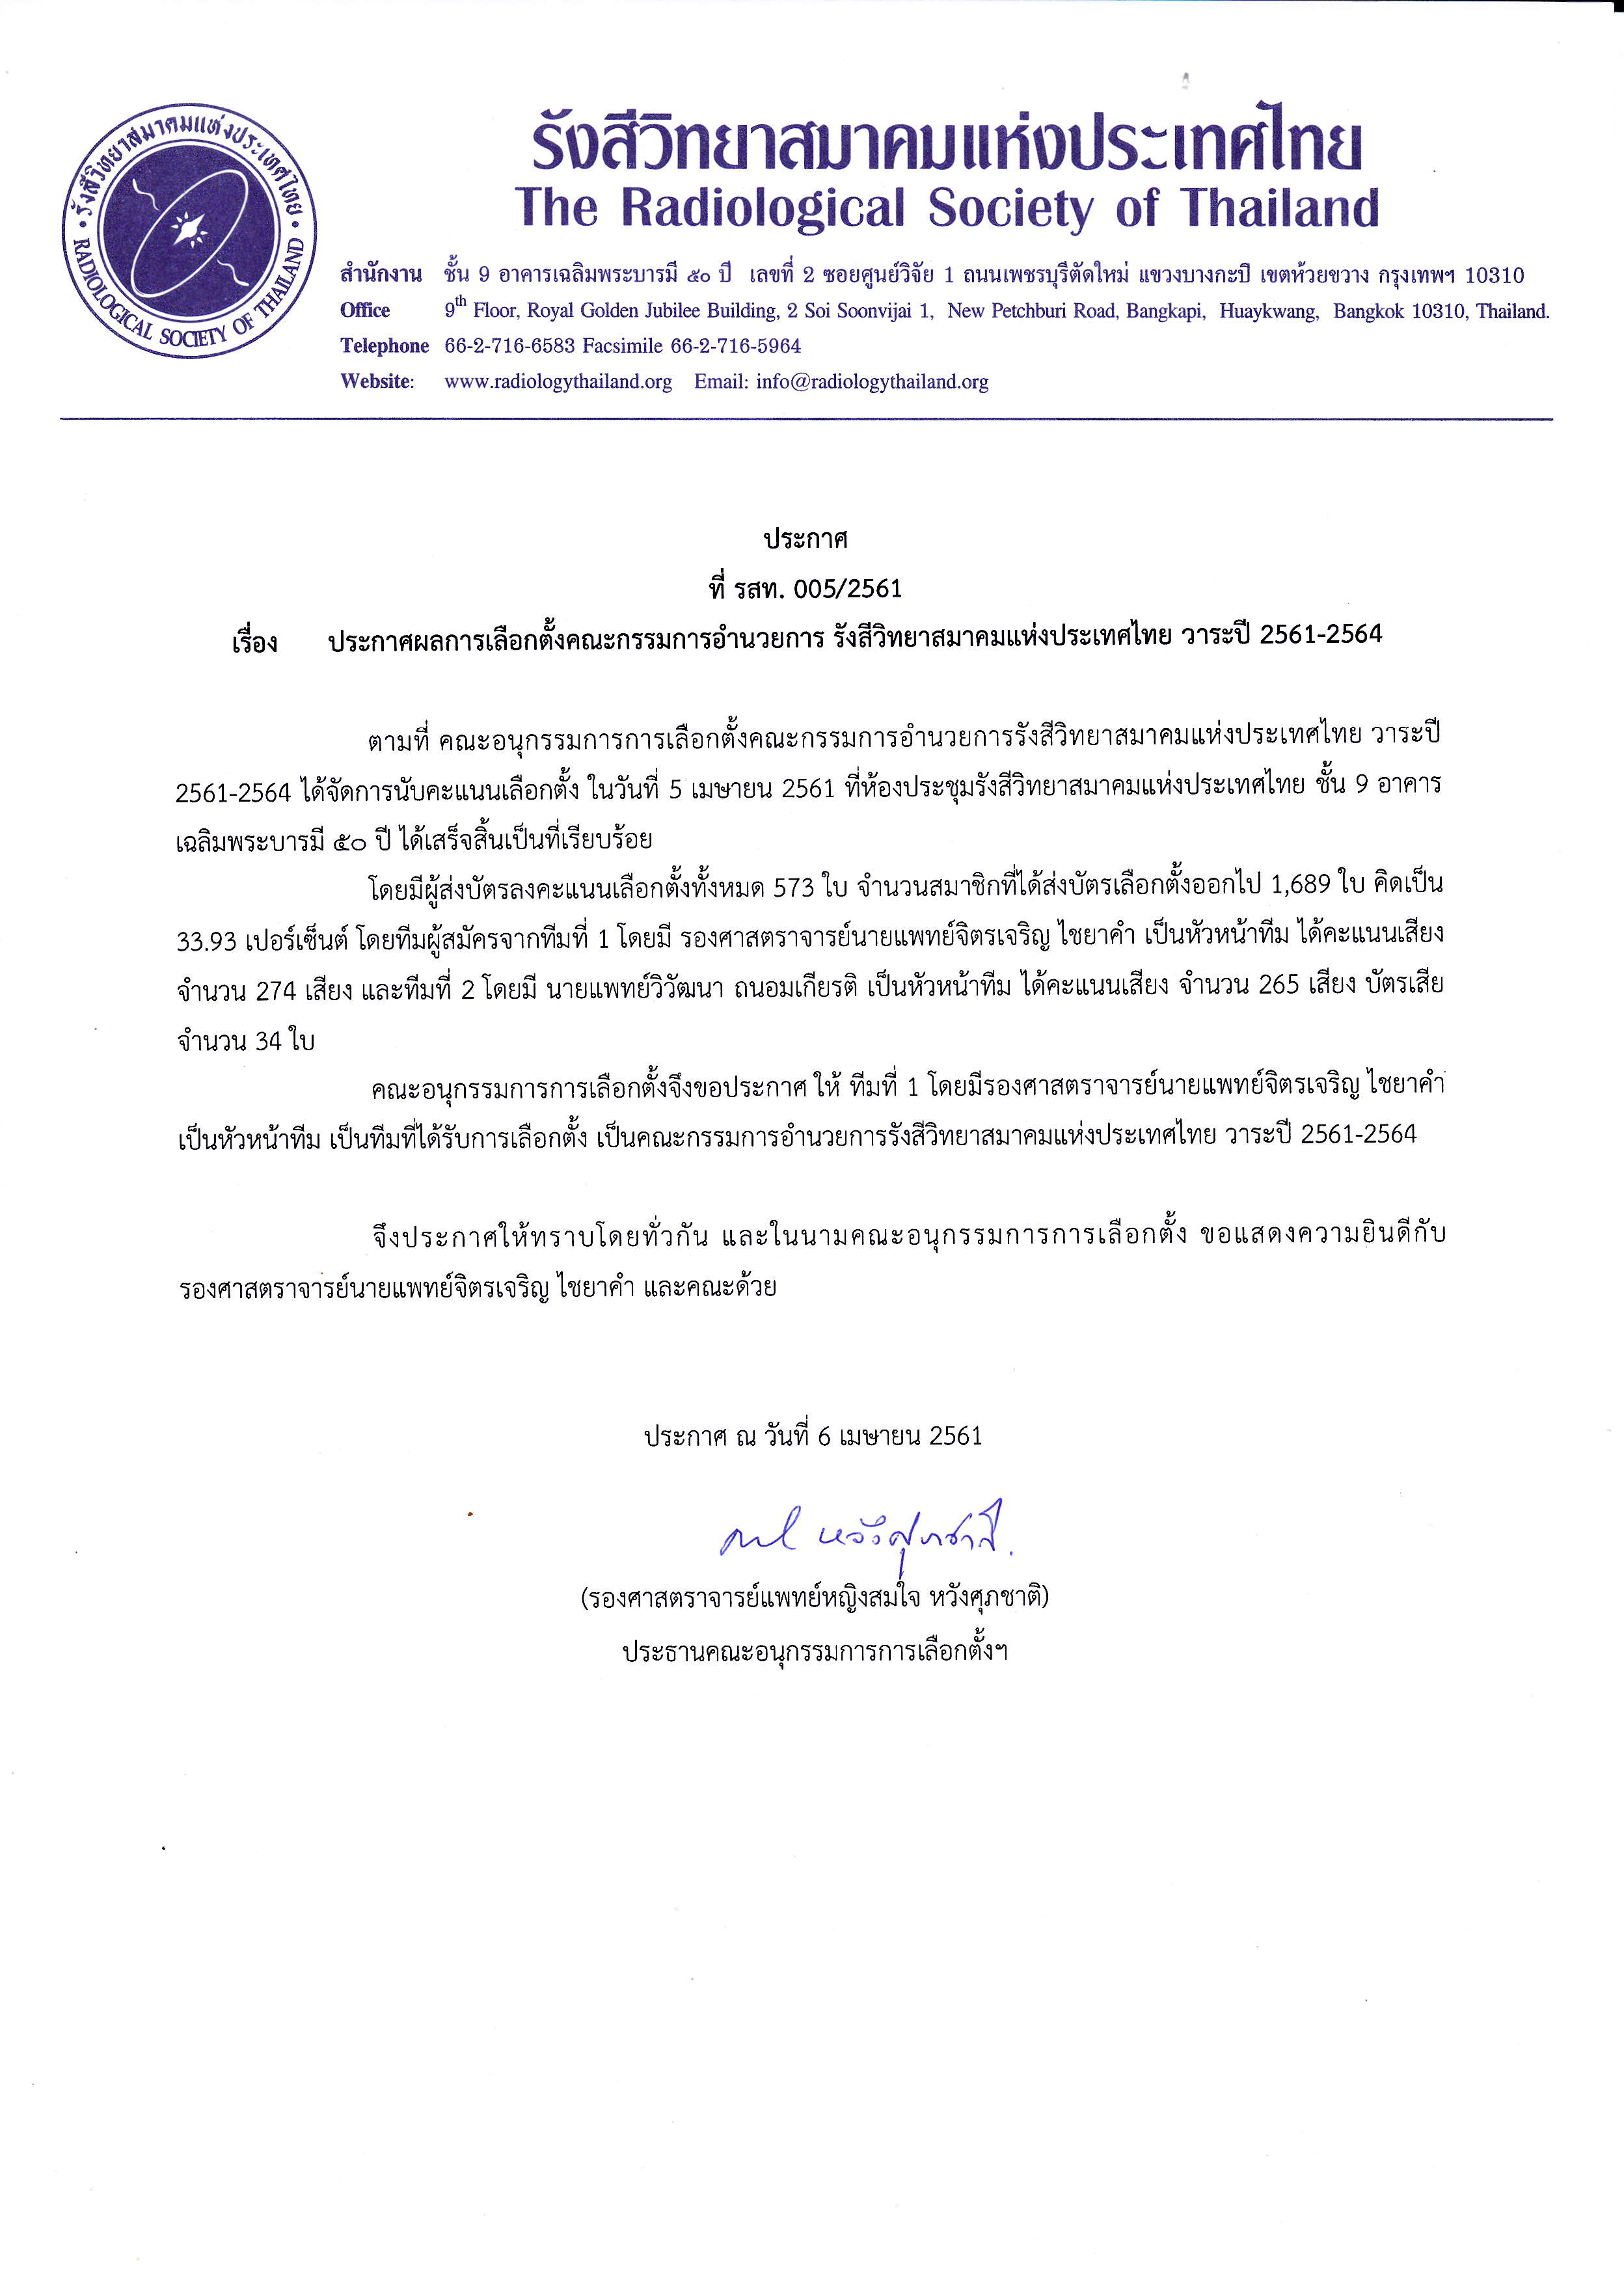 ผลการเลือกตั้งกรรมการอำนวยการรังสีวิทยาสมาคมแห่งประเทศไทย 3